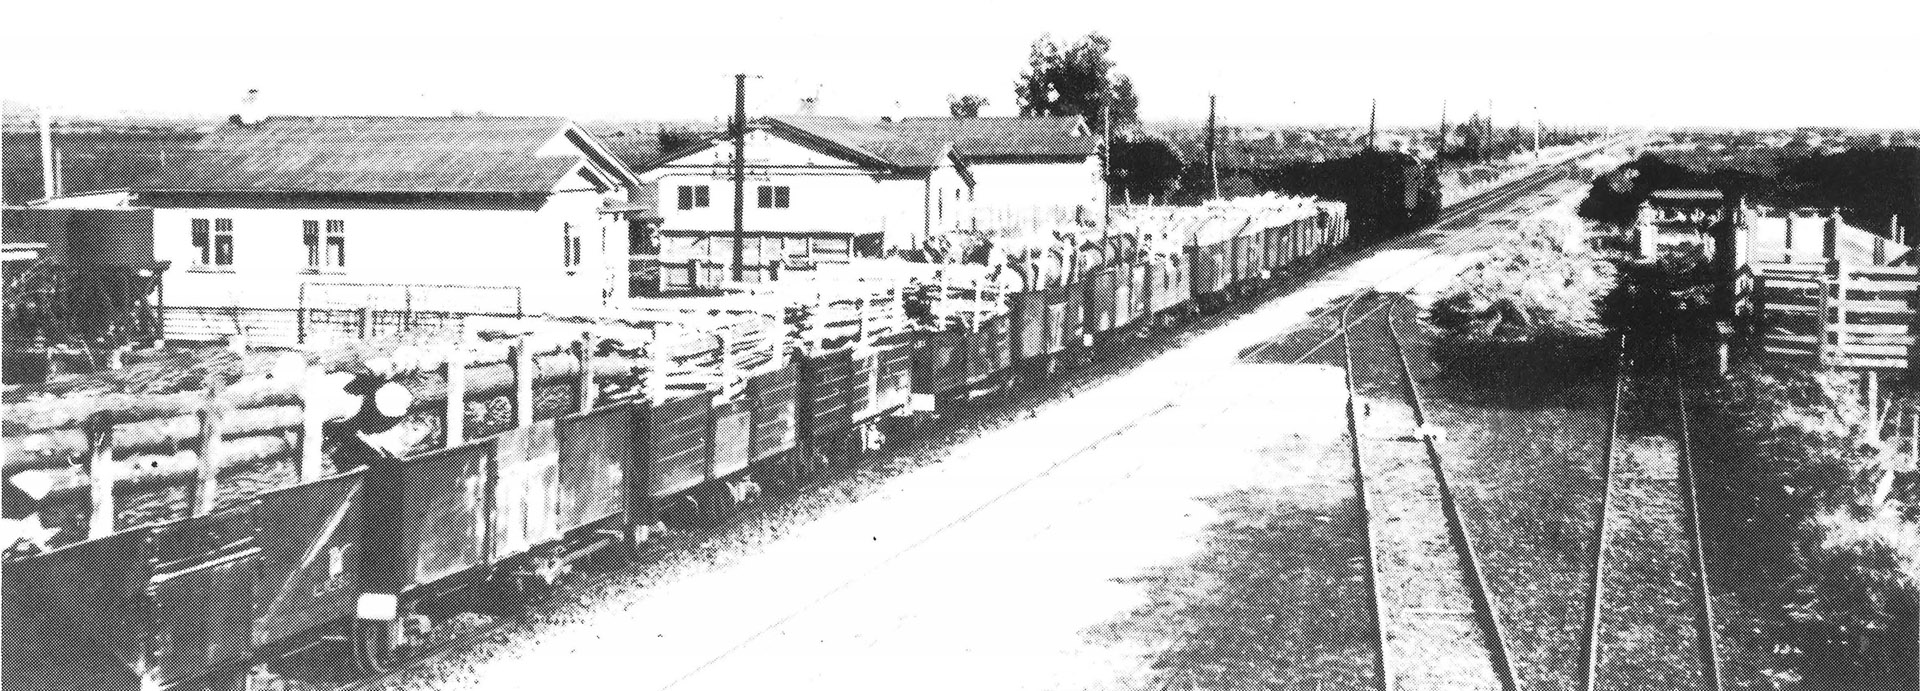 Waggons waiting on the Eureka siding